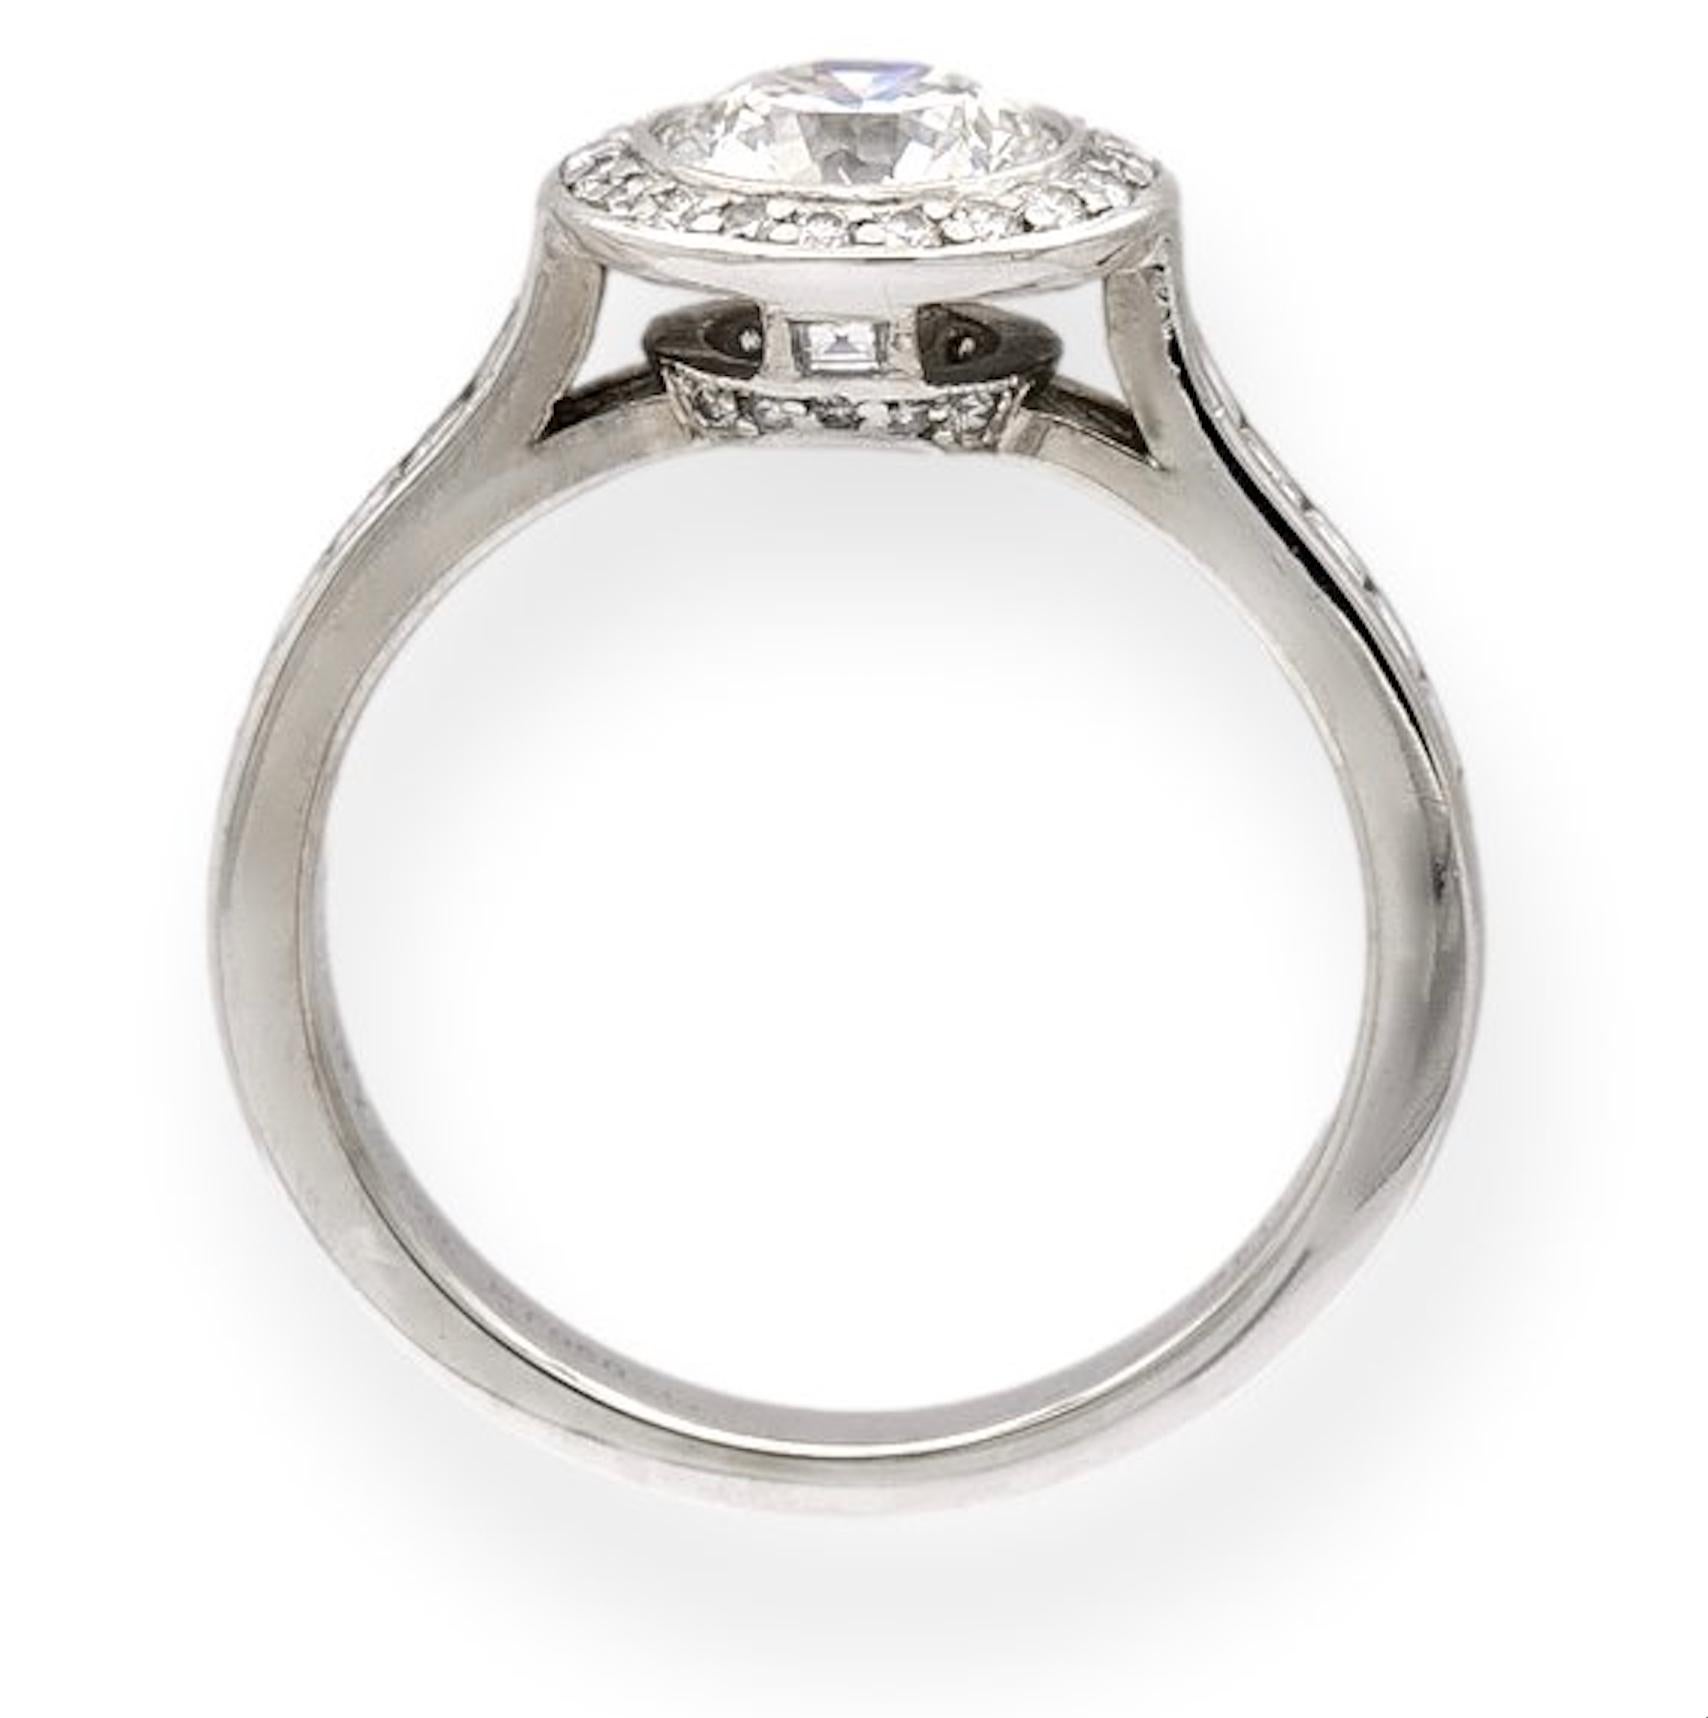 Verlobungsring von Tiffany & Co. aus der Embrace Collection in Platin mit einem runden Brillanten in der Mitte, der in einer Lünette mit einem Gewicht von 1,07 Karat gefasst ist, umgeben von einem Halo aus kanalgefassten runden Diamanten im